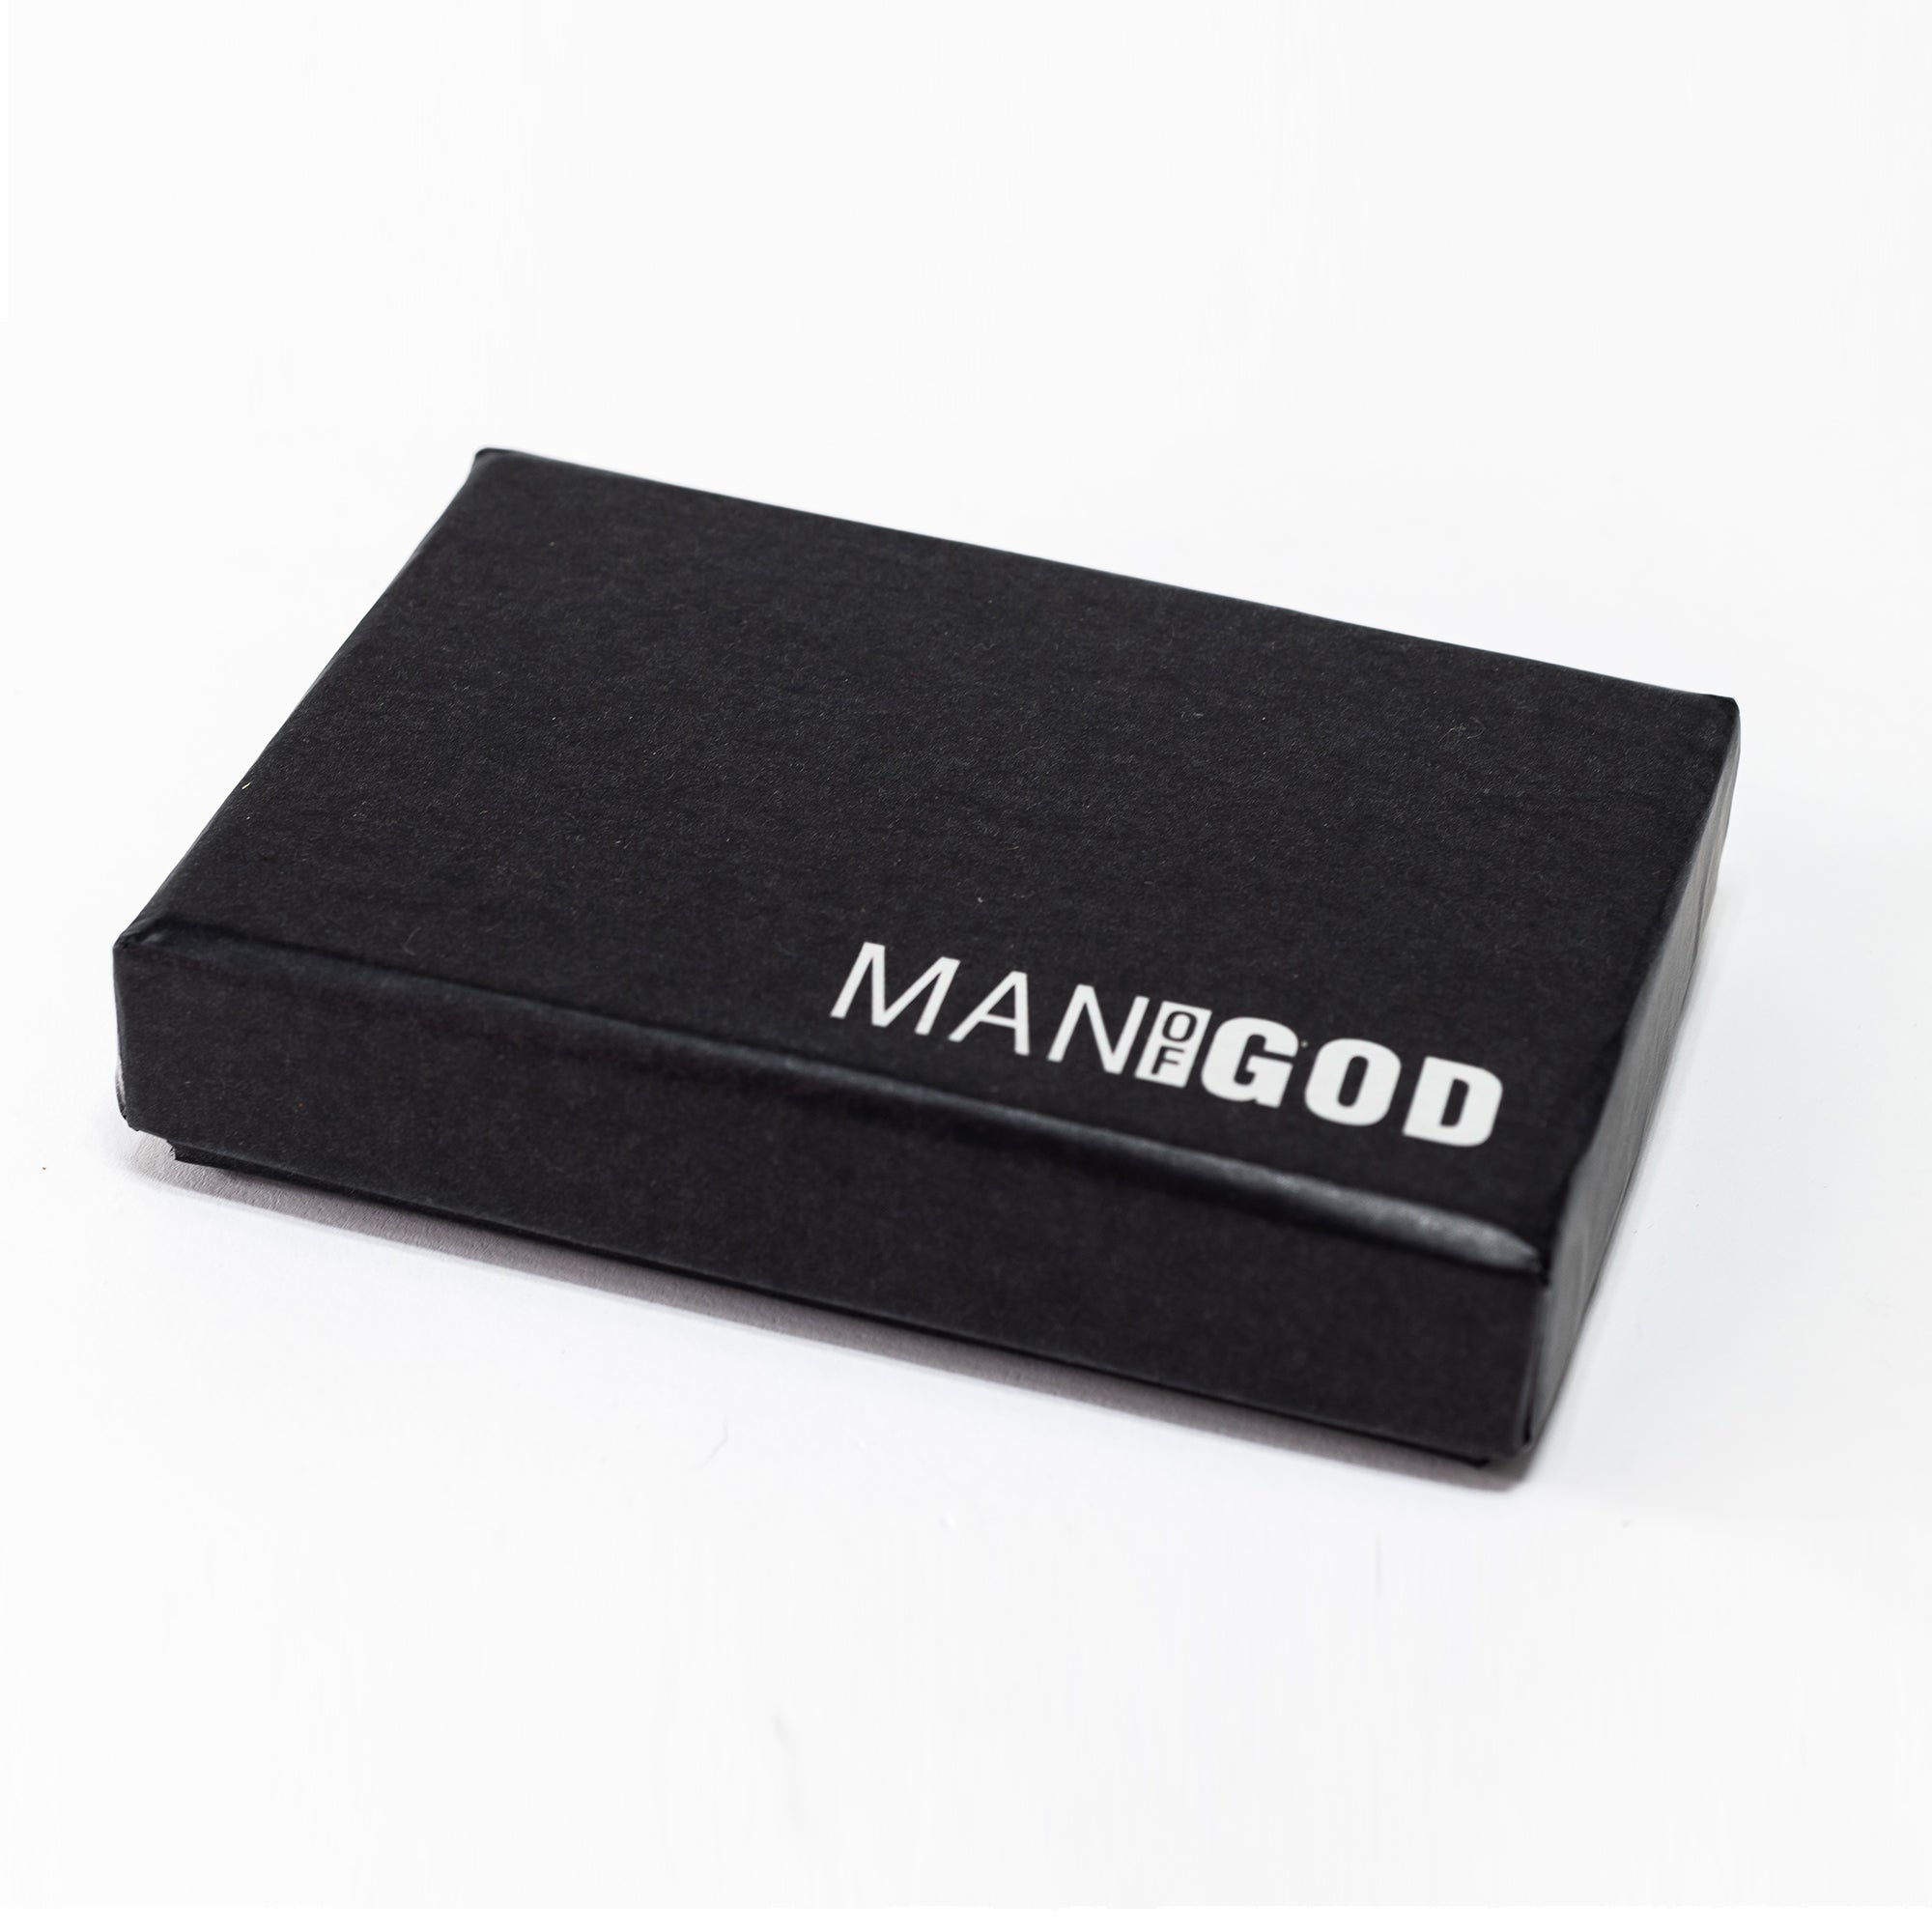 Man of God: Card Blocker RFID Auto Wallet